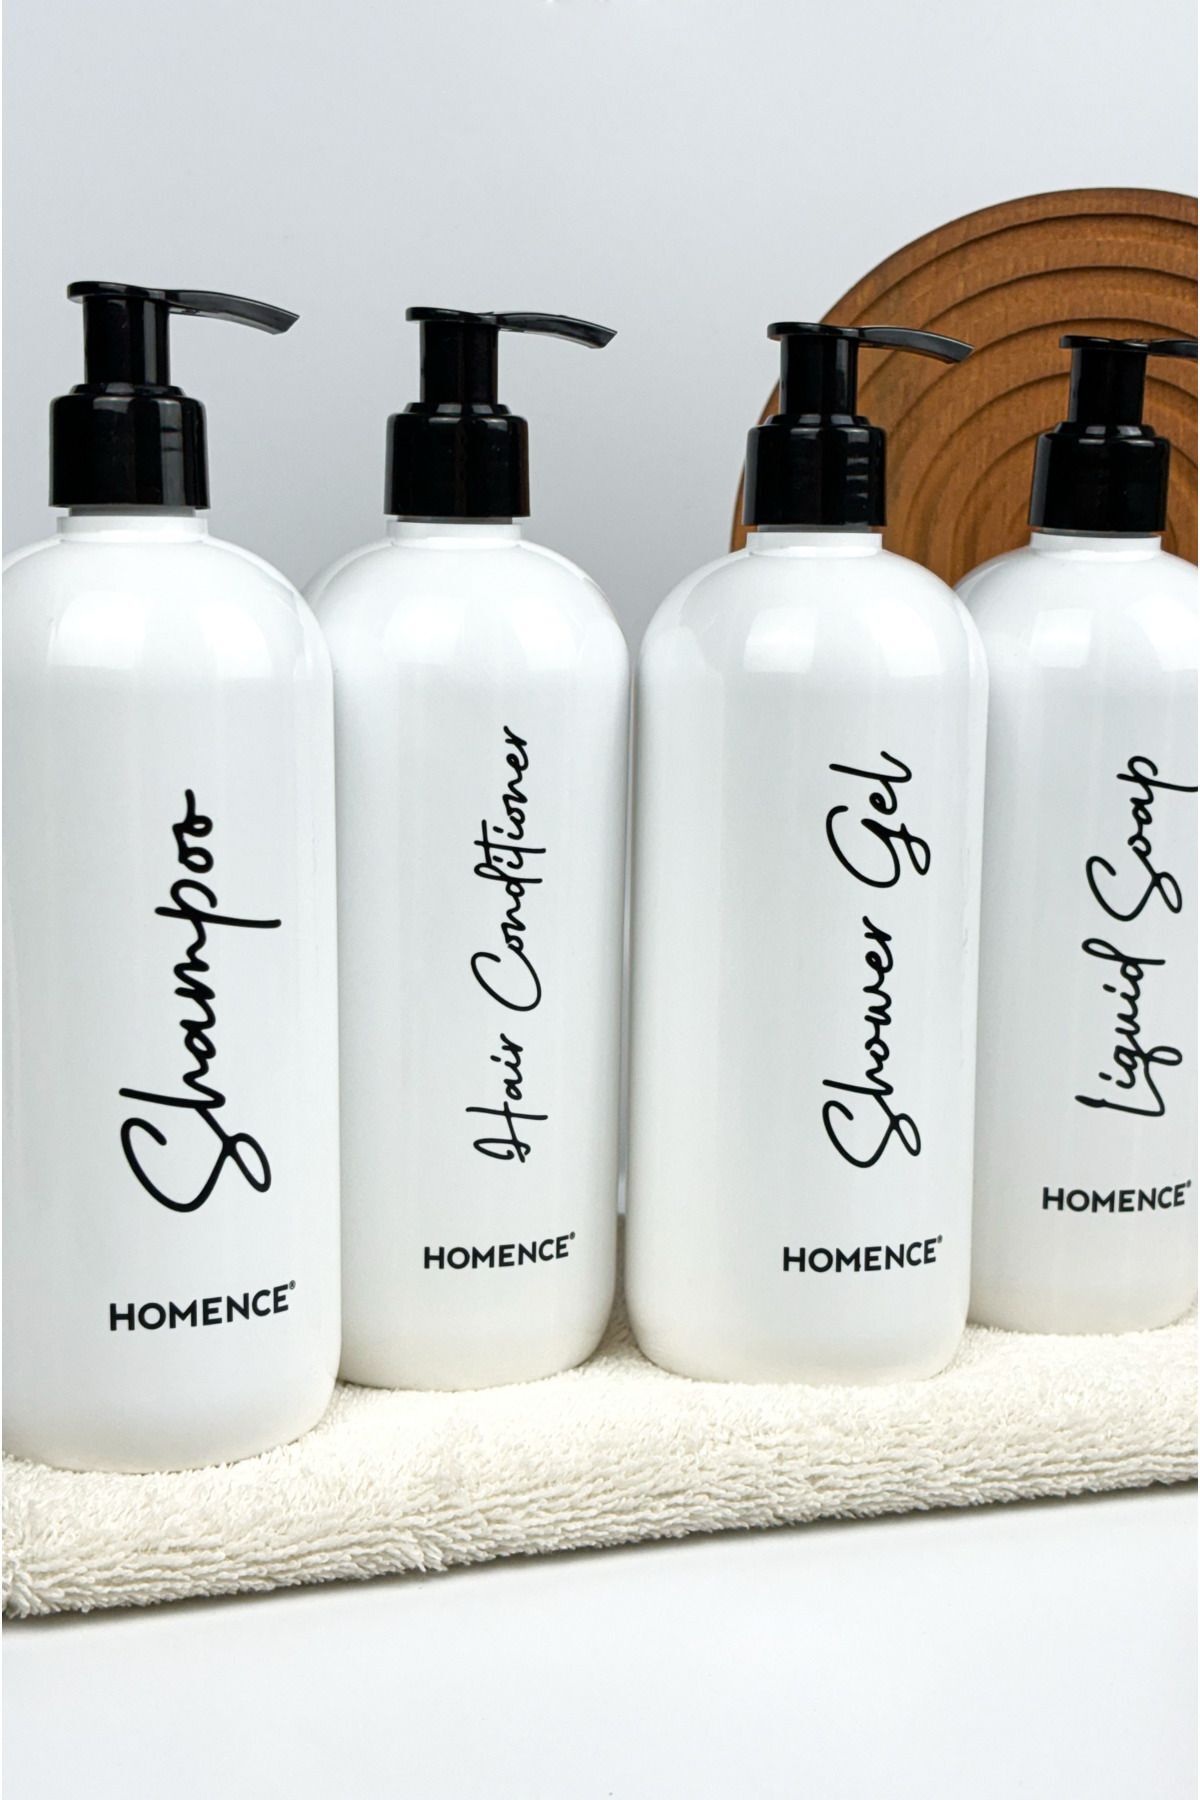 homence Şampuan Duş Jeli Saç Kremi Ve Sıvı Sabun Baskılı Plastik Şişe Banyo Seti 4'lü Beyaz Sabunluk 500 ml